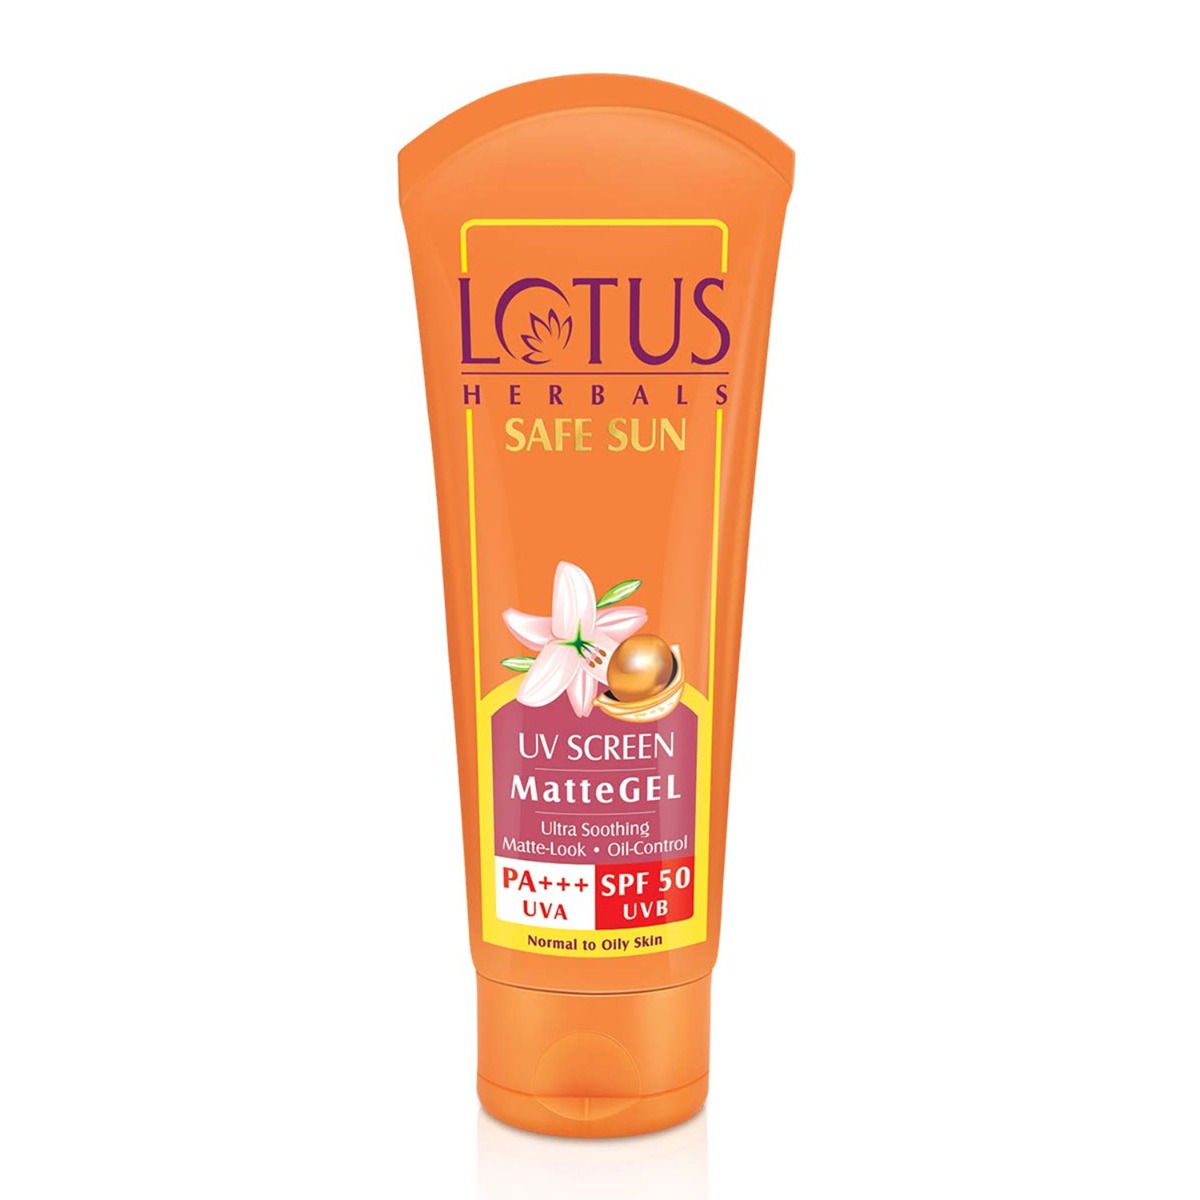 Lotus Herbals Safe Sun UV Screen Matte Gel Pa+++ SPF-50, 50gm